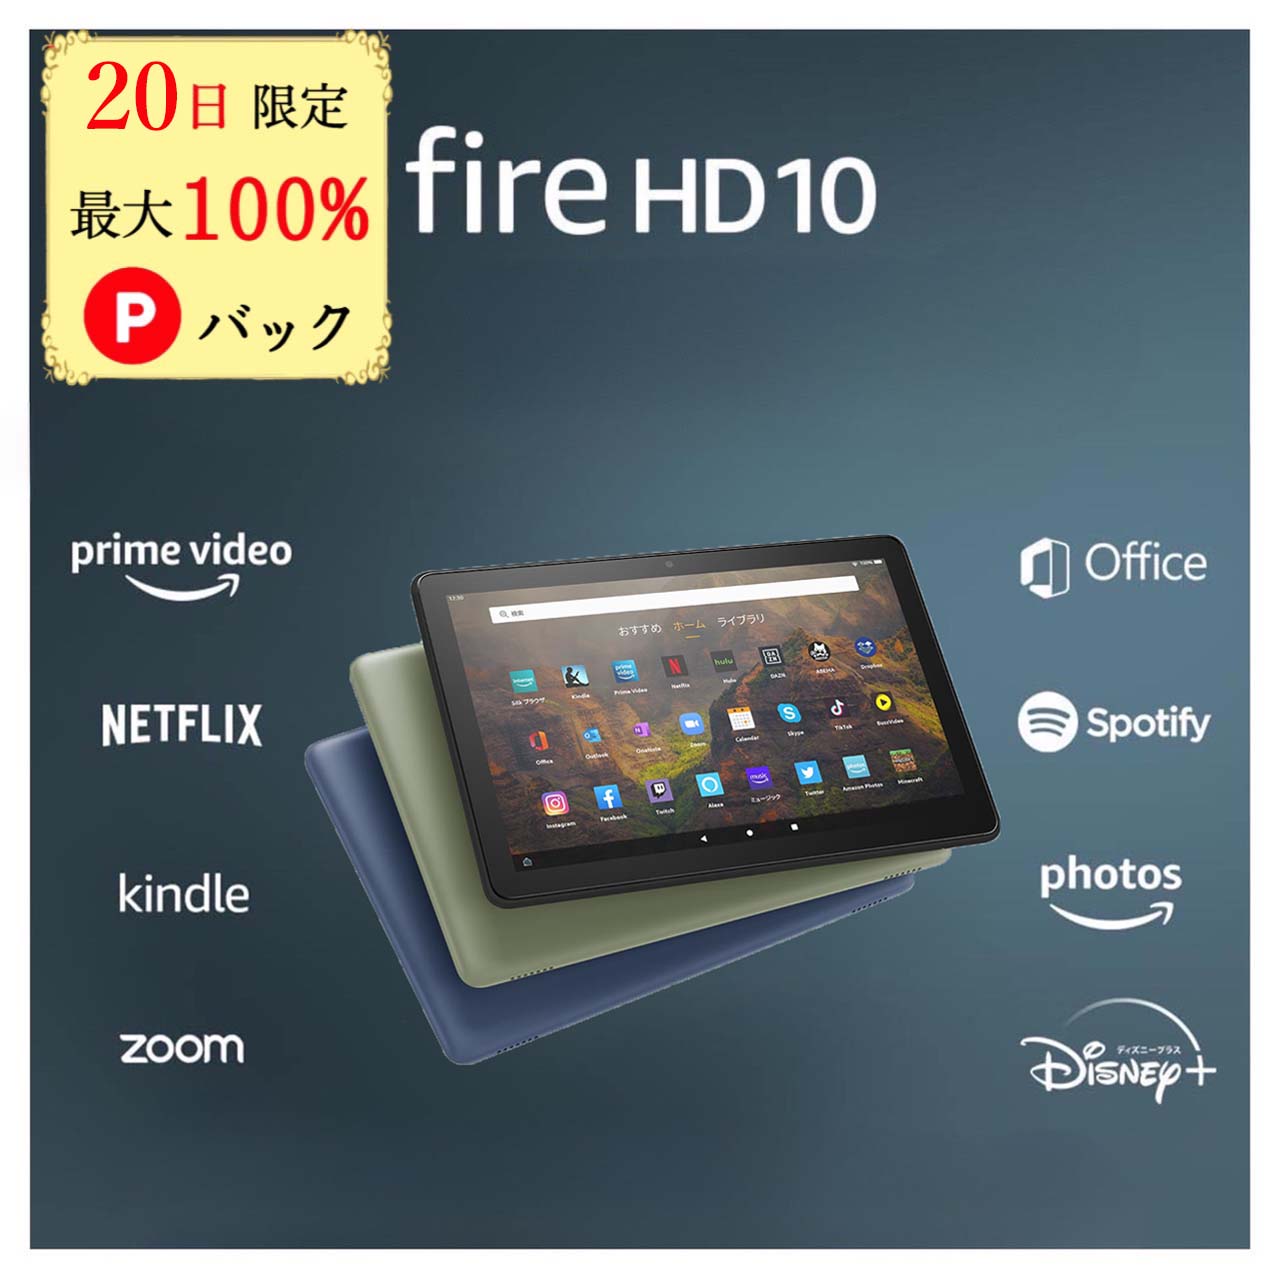 【20日限定 当選確率1/2 最大100%Pバック】 Fire HD 10 タブレット 32GB 64GB firehd10 アレクサ ブラック 新型 第13世代 アマゾン タブレット Amazon ファイヤ タブレット ファイア エイチディー fire タブレット ファイア Wi-Fiモデル kindle キンドル キンデル pc